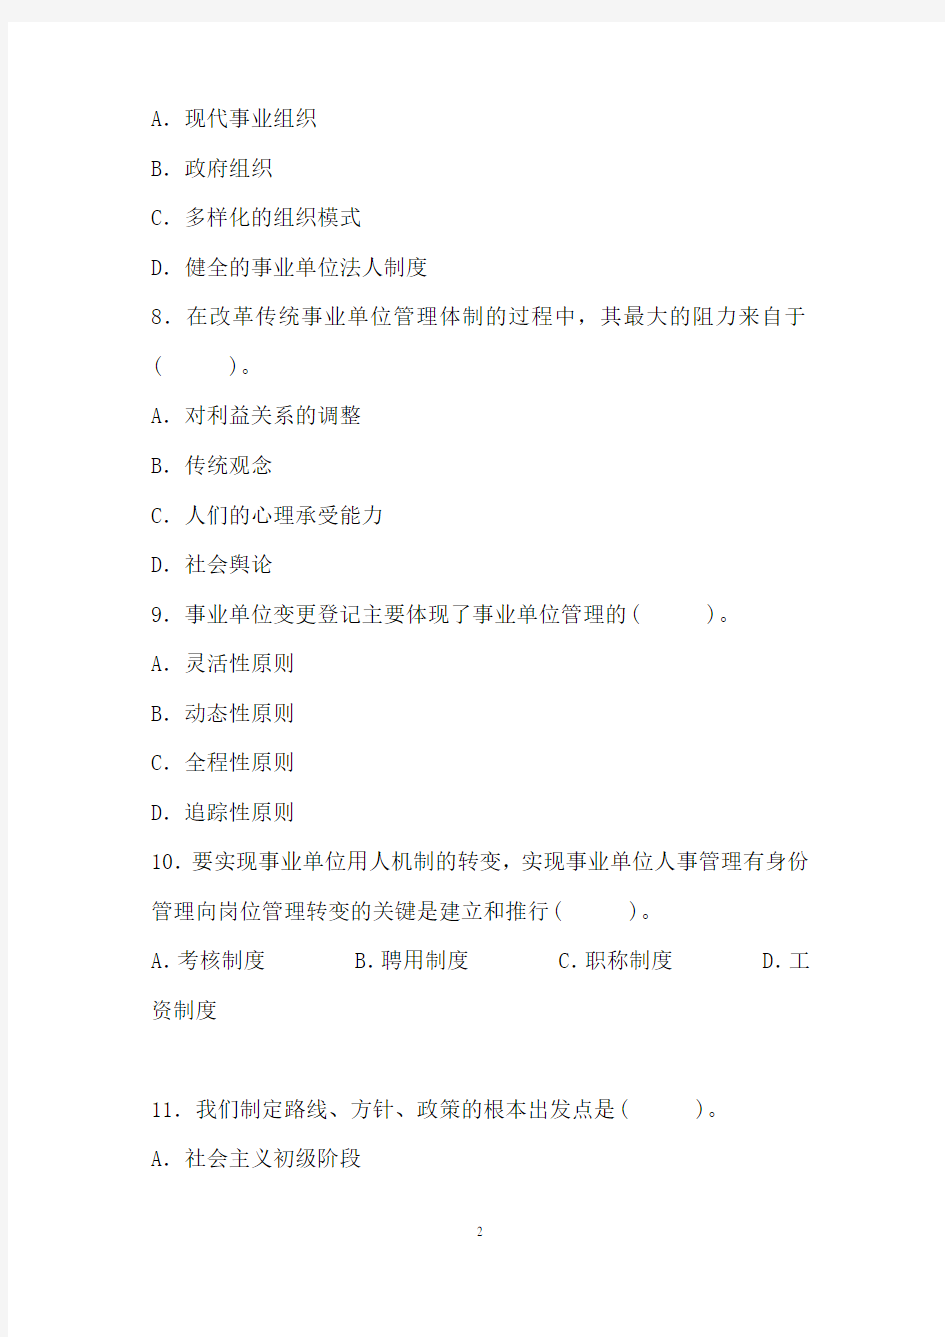 2014年江苏省事业单位考试真题及参考答案